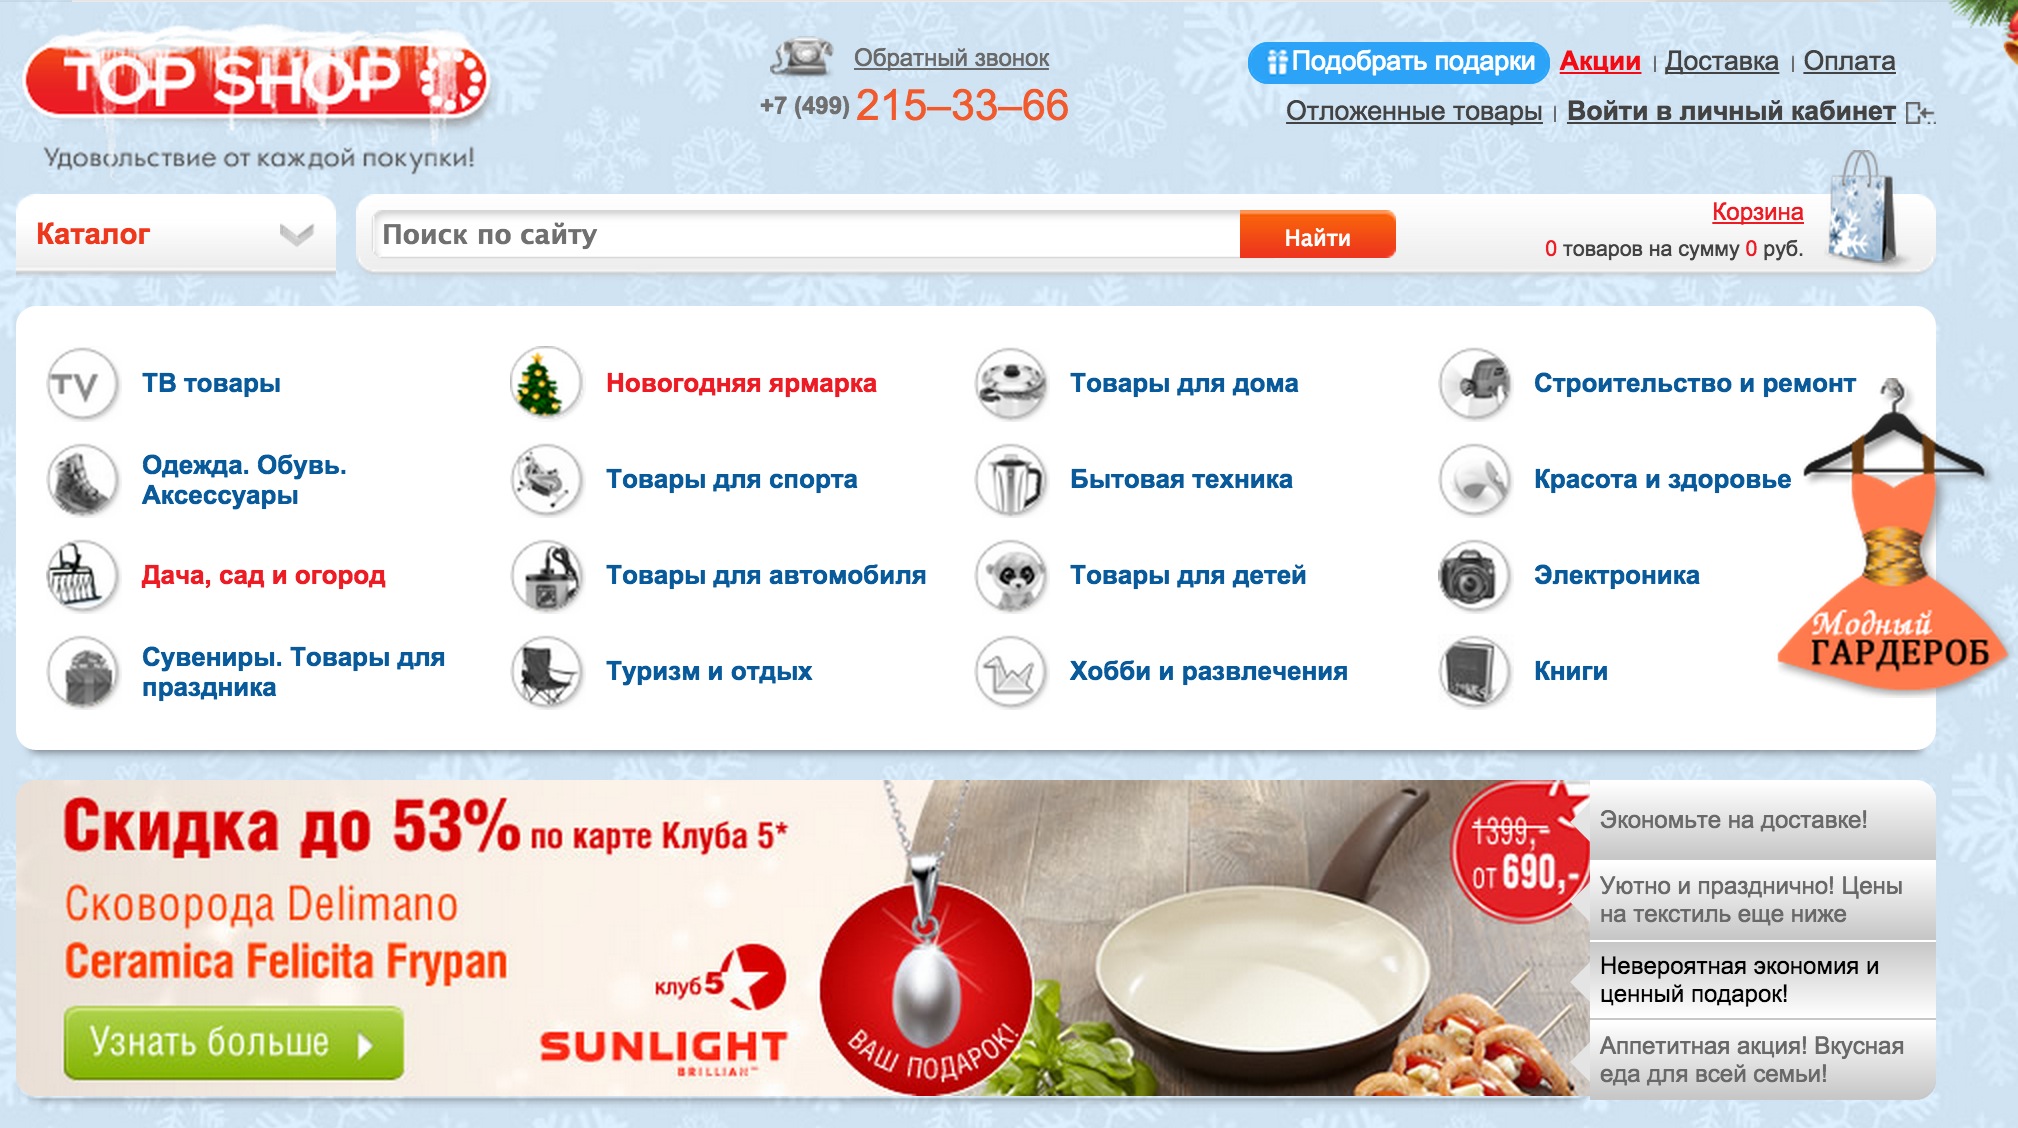 Usmoll Ru Интернет Магазин Официальный